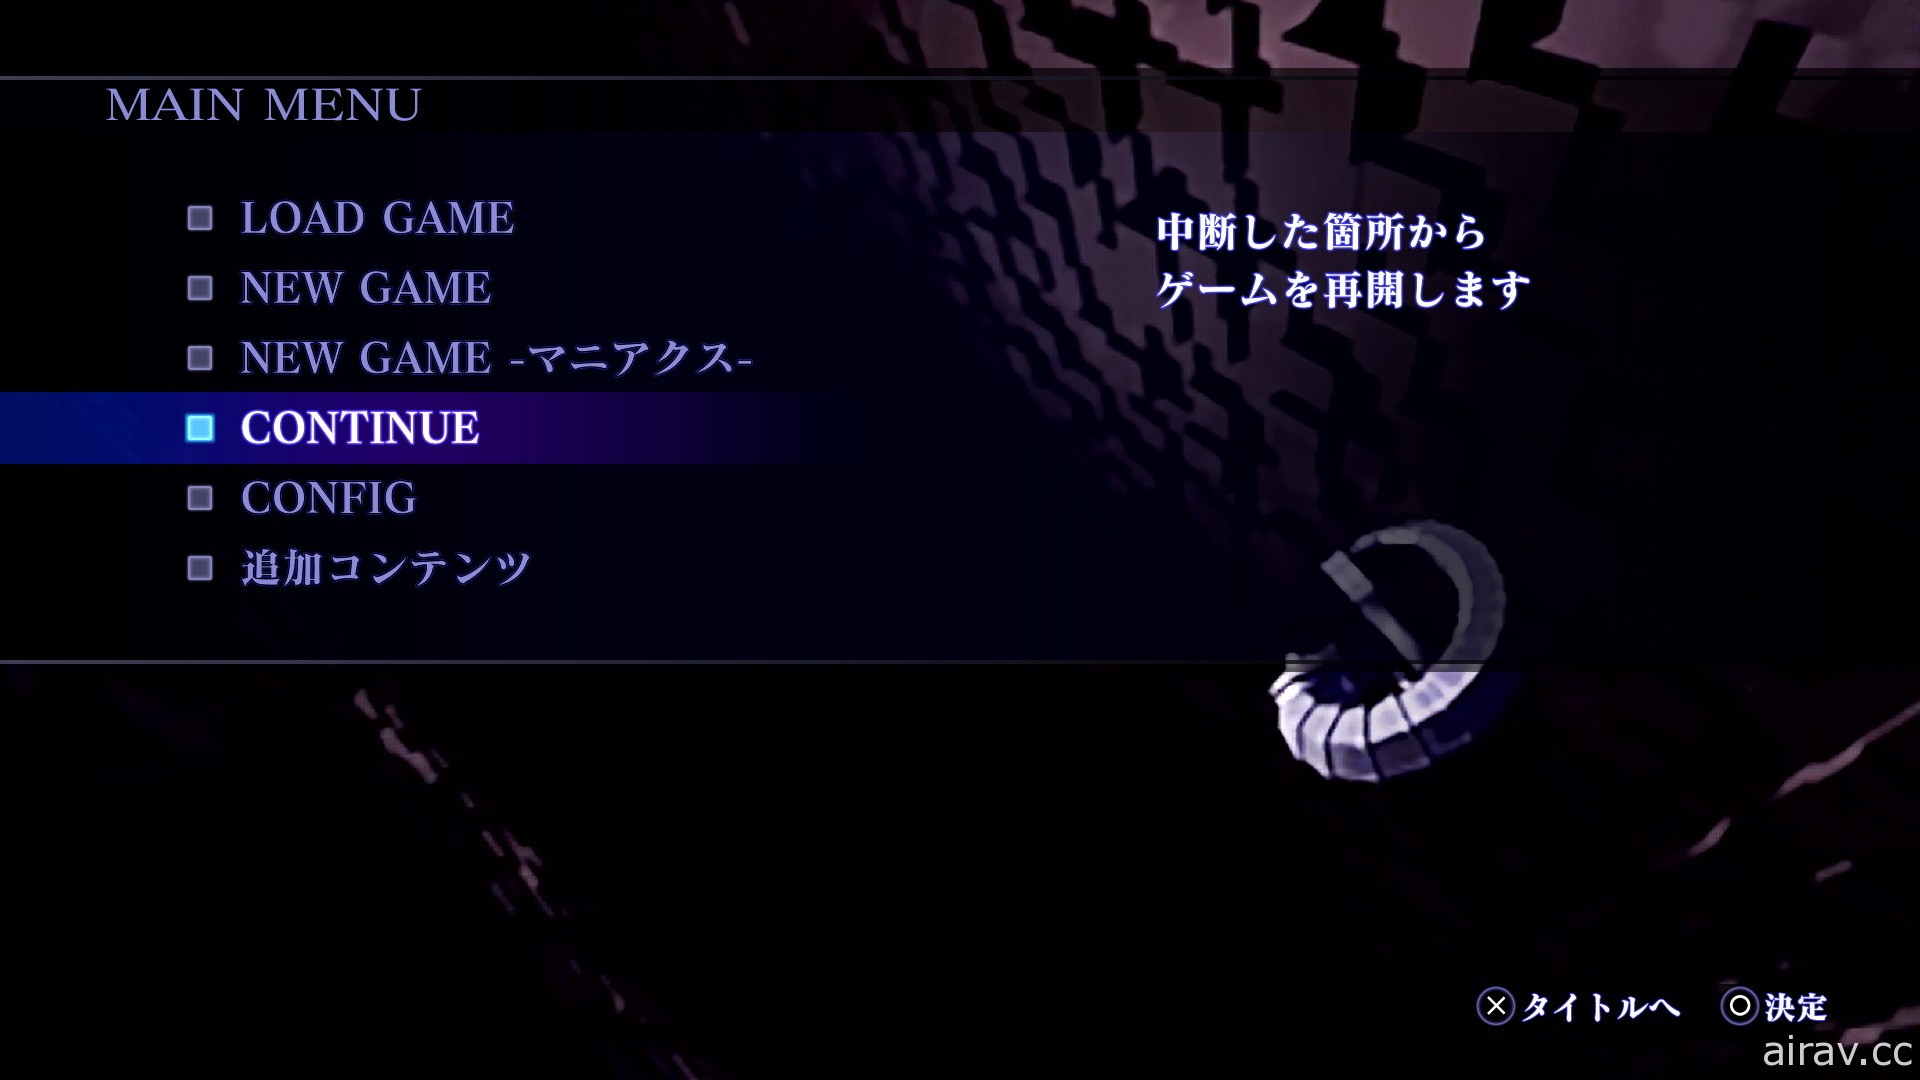 《真・女神轉生 III Nocturne HD Remaster》公開可更加享受遊戲樂趣的追加內容